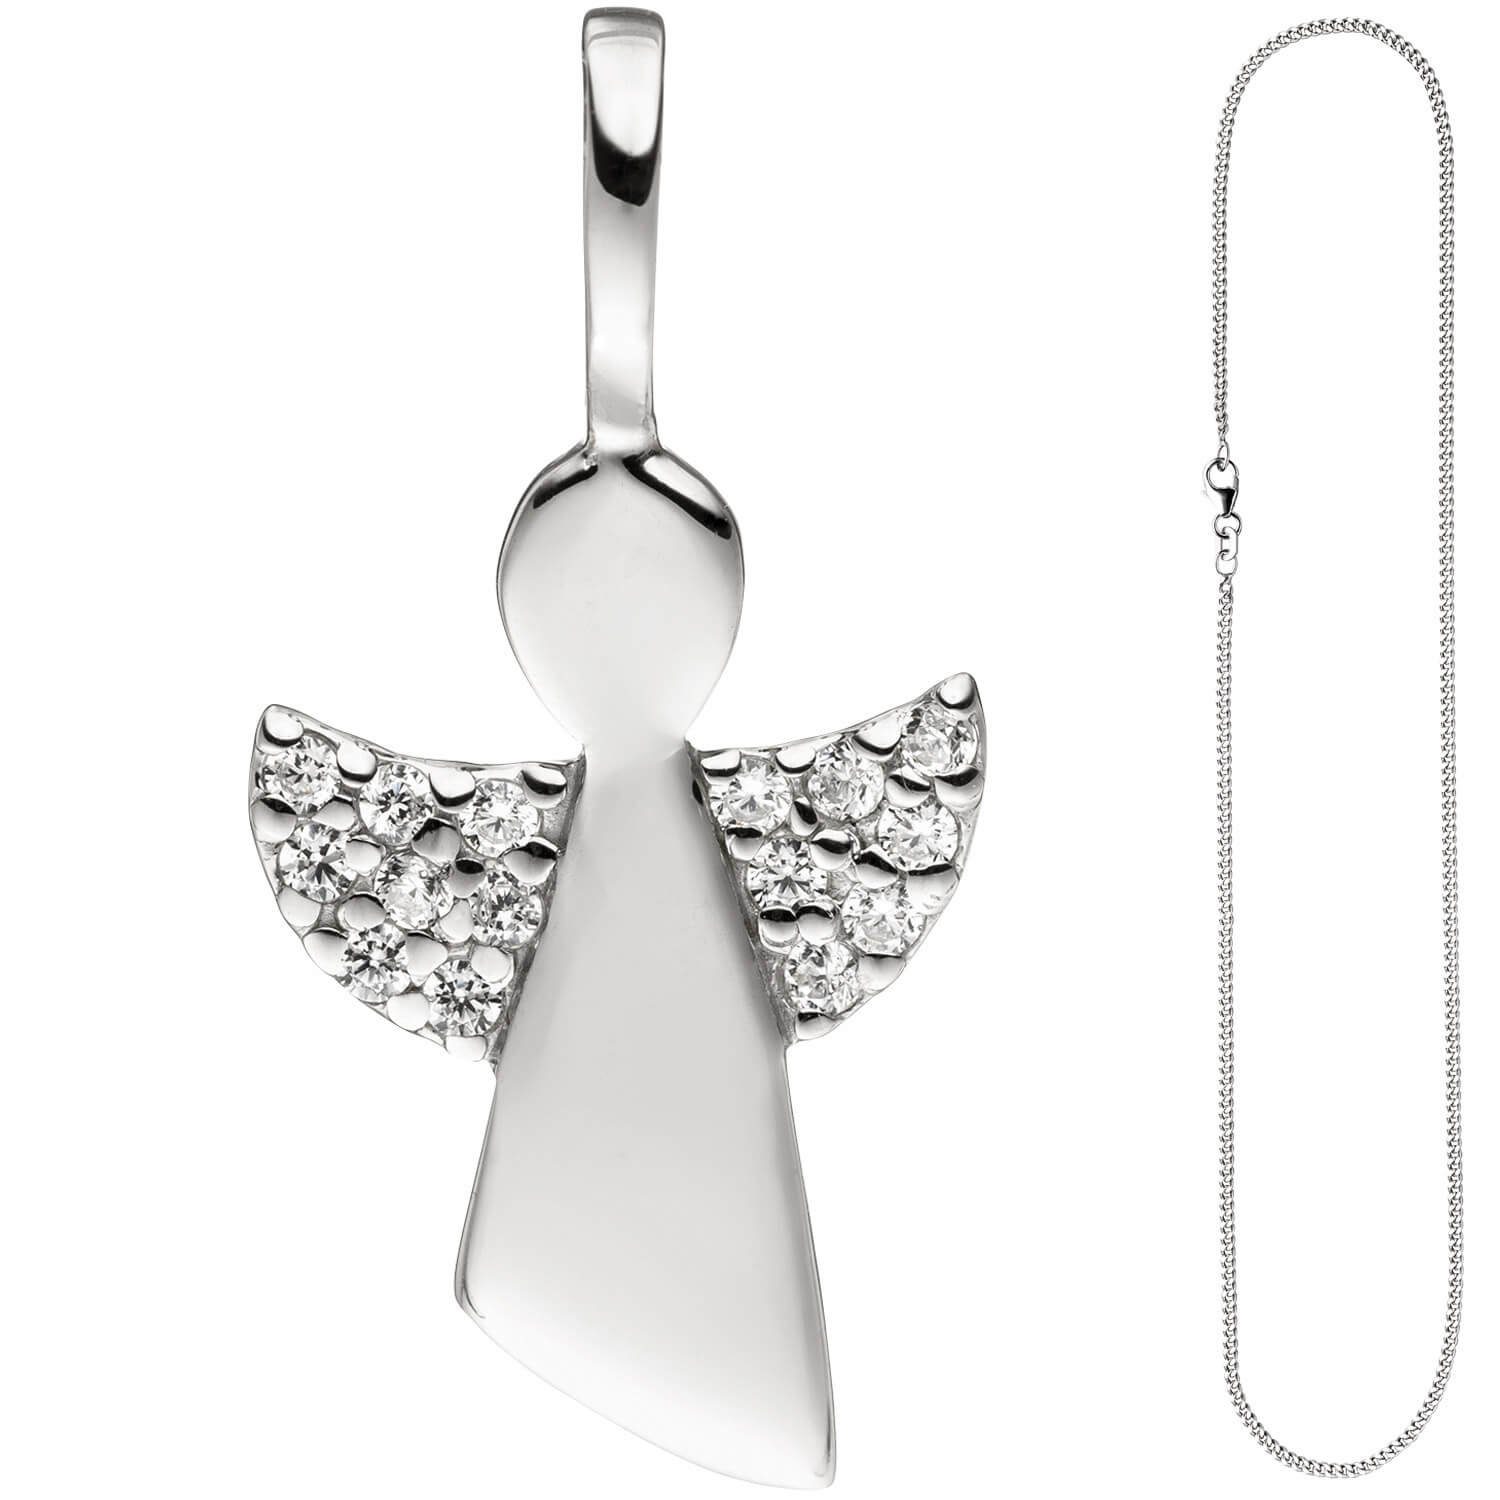 Schmuck Silberkette Engel Schutzengel für Silber Kinder 925 mit Krone Anhänger 38cm Halskette mit Zirkonia